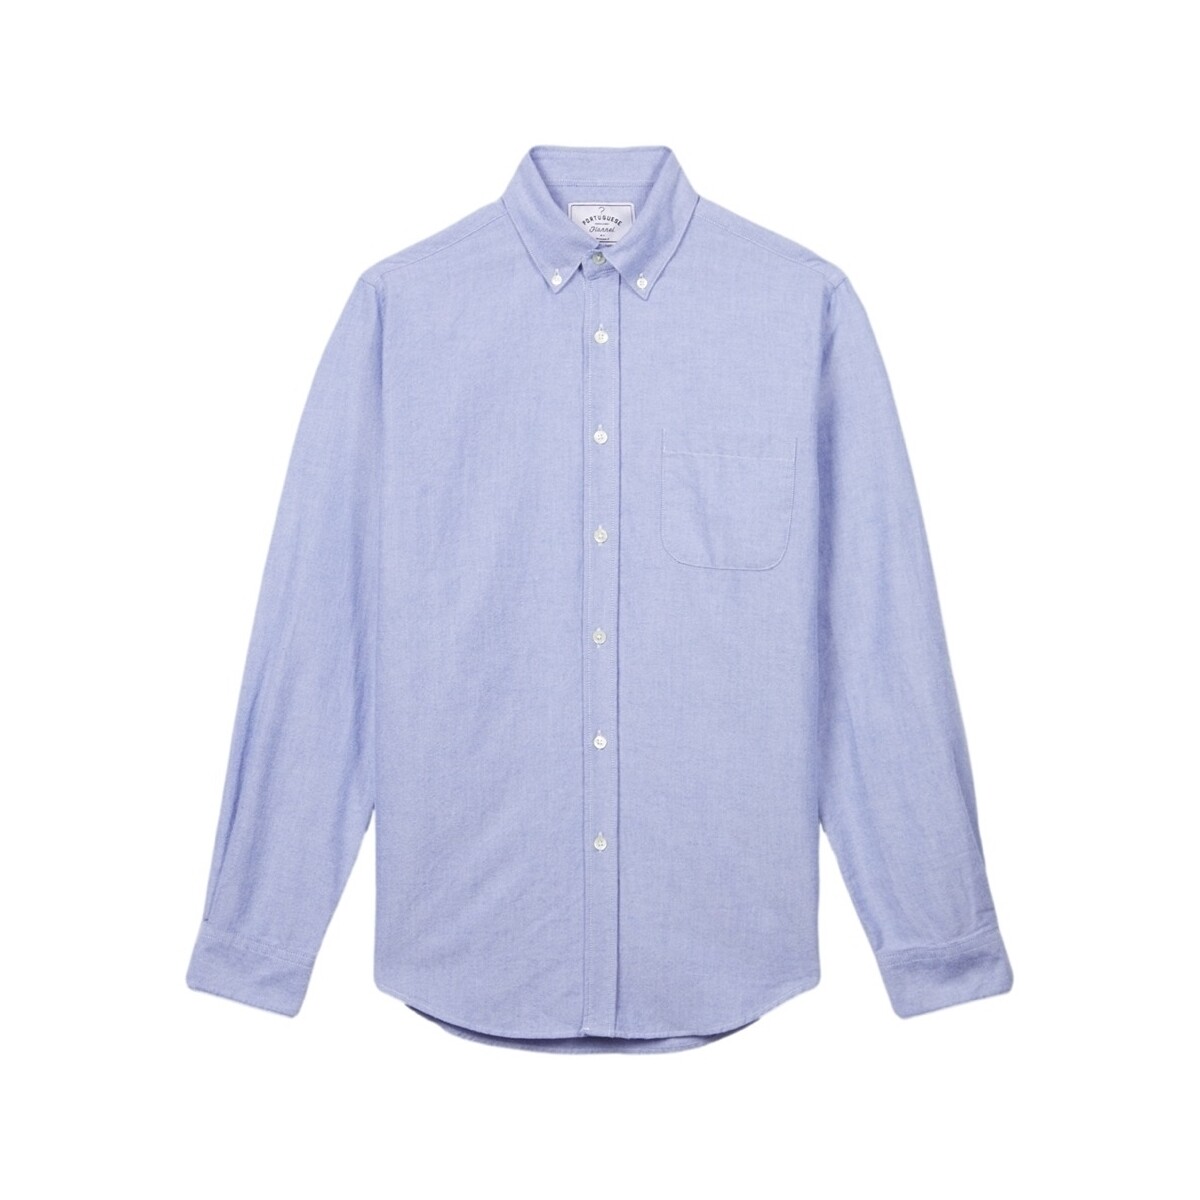 tekstylia Męskie Koszule z długim rękawem Portuguese Flannel Brushed Oxford Shirt - Blue Niebieski